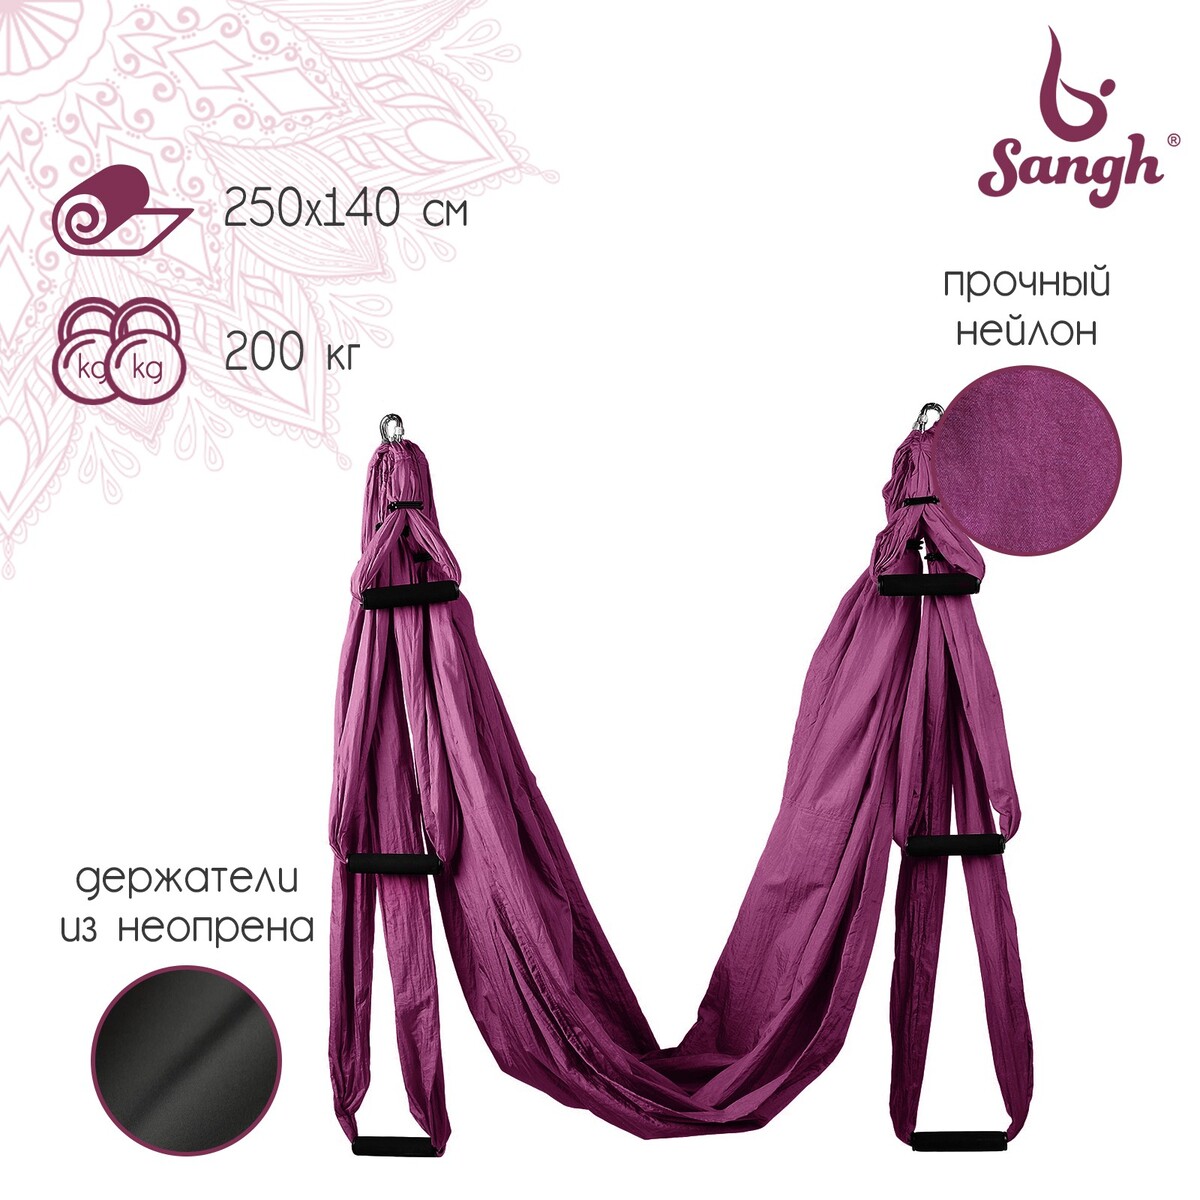 Гамак для йоги sangh, 250×140 см, цвет фиолетовый качель гамак детская d 750 красный